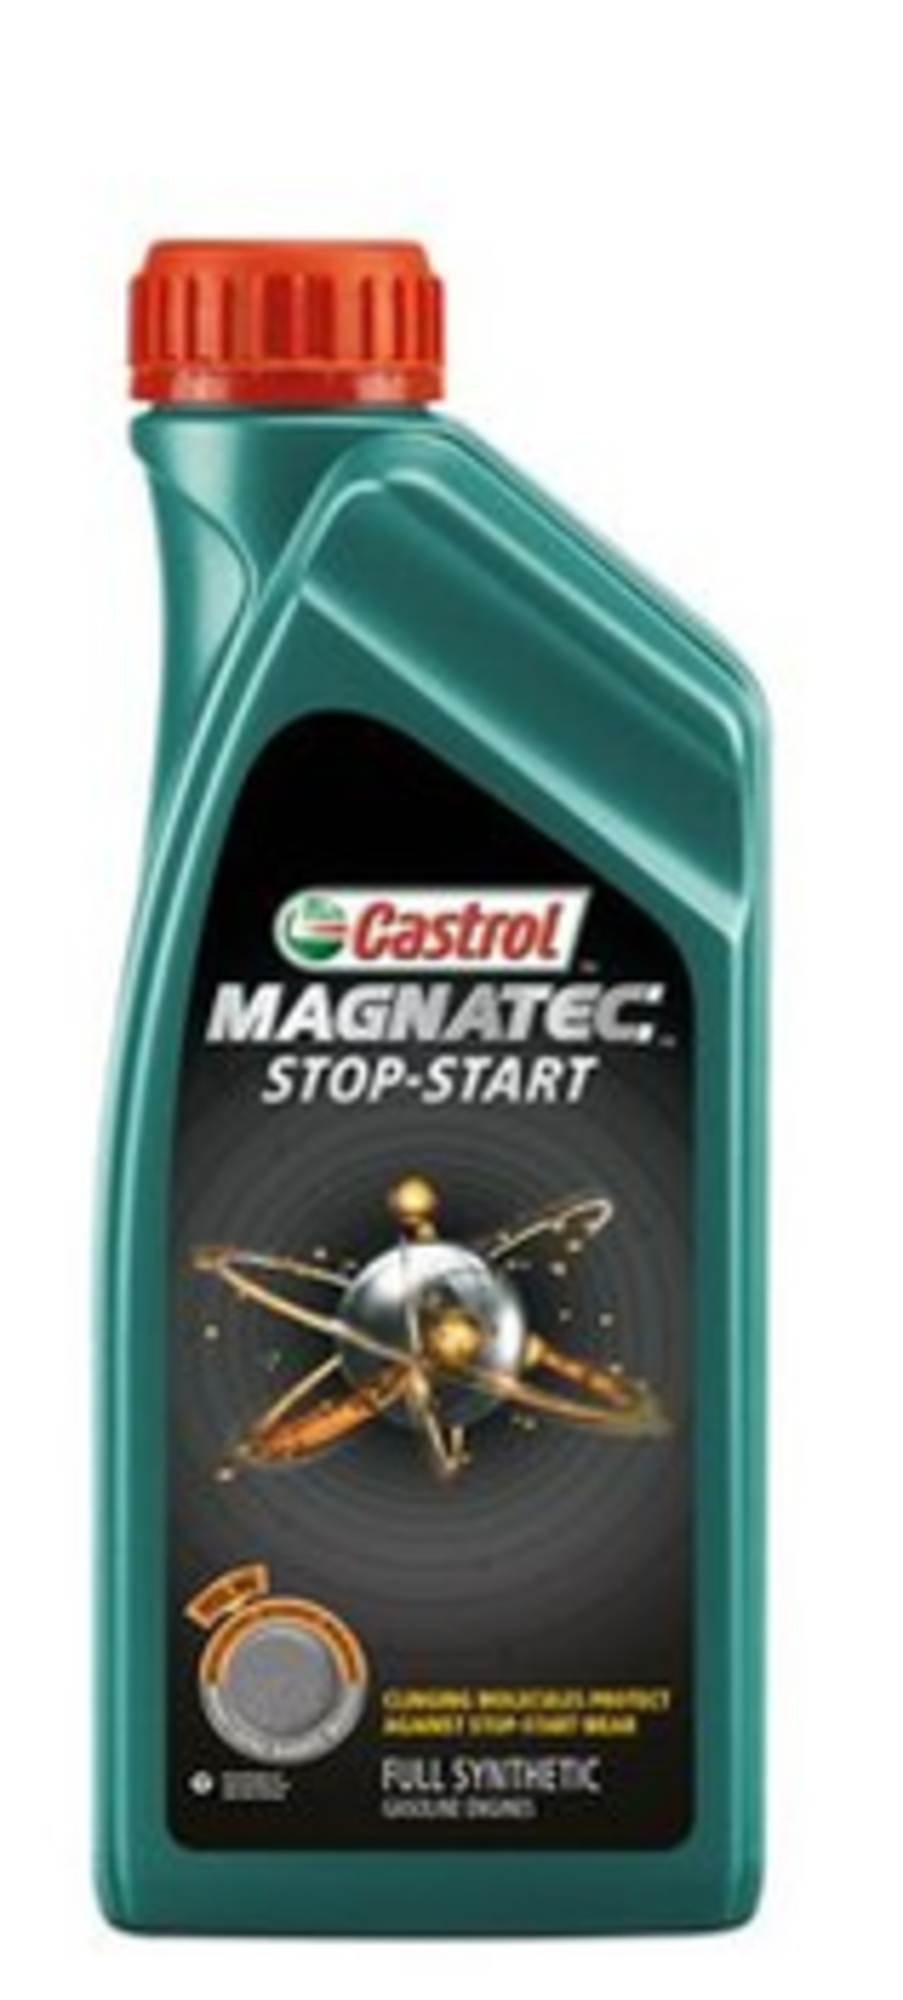 Castrol magnatec stop-start 5w30 a5 1l